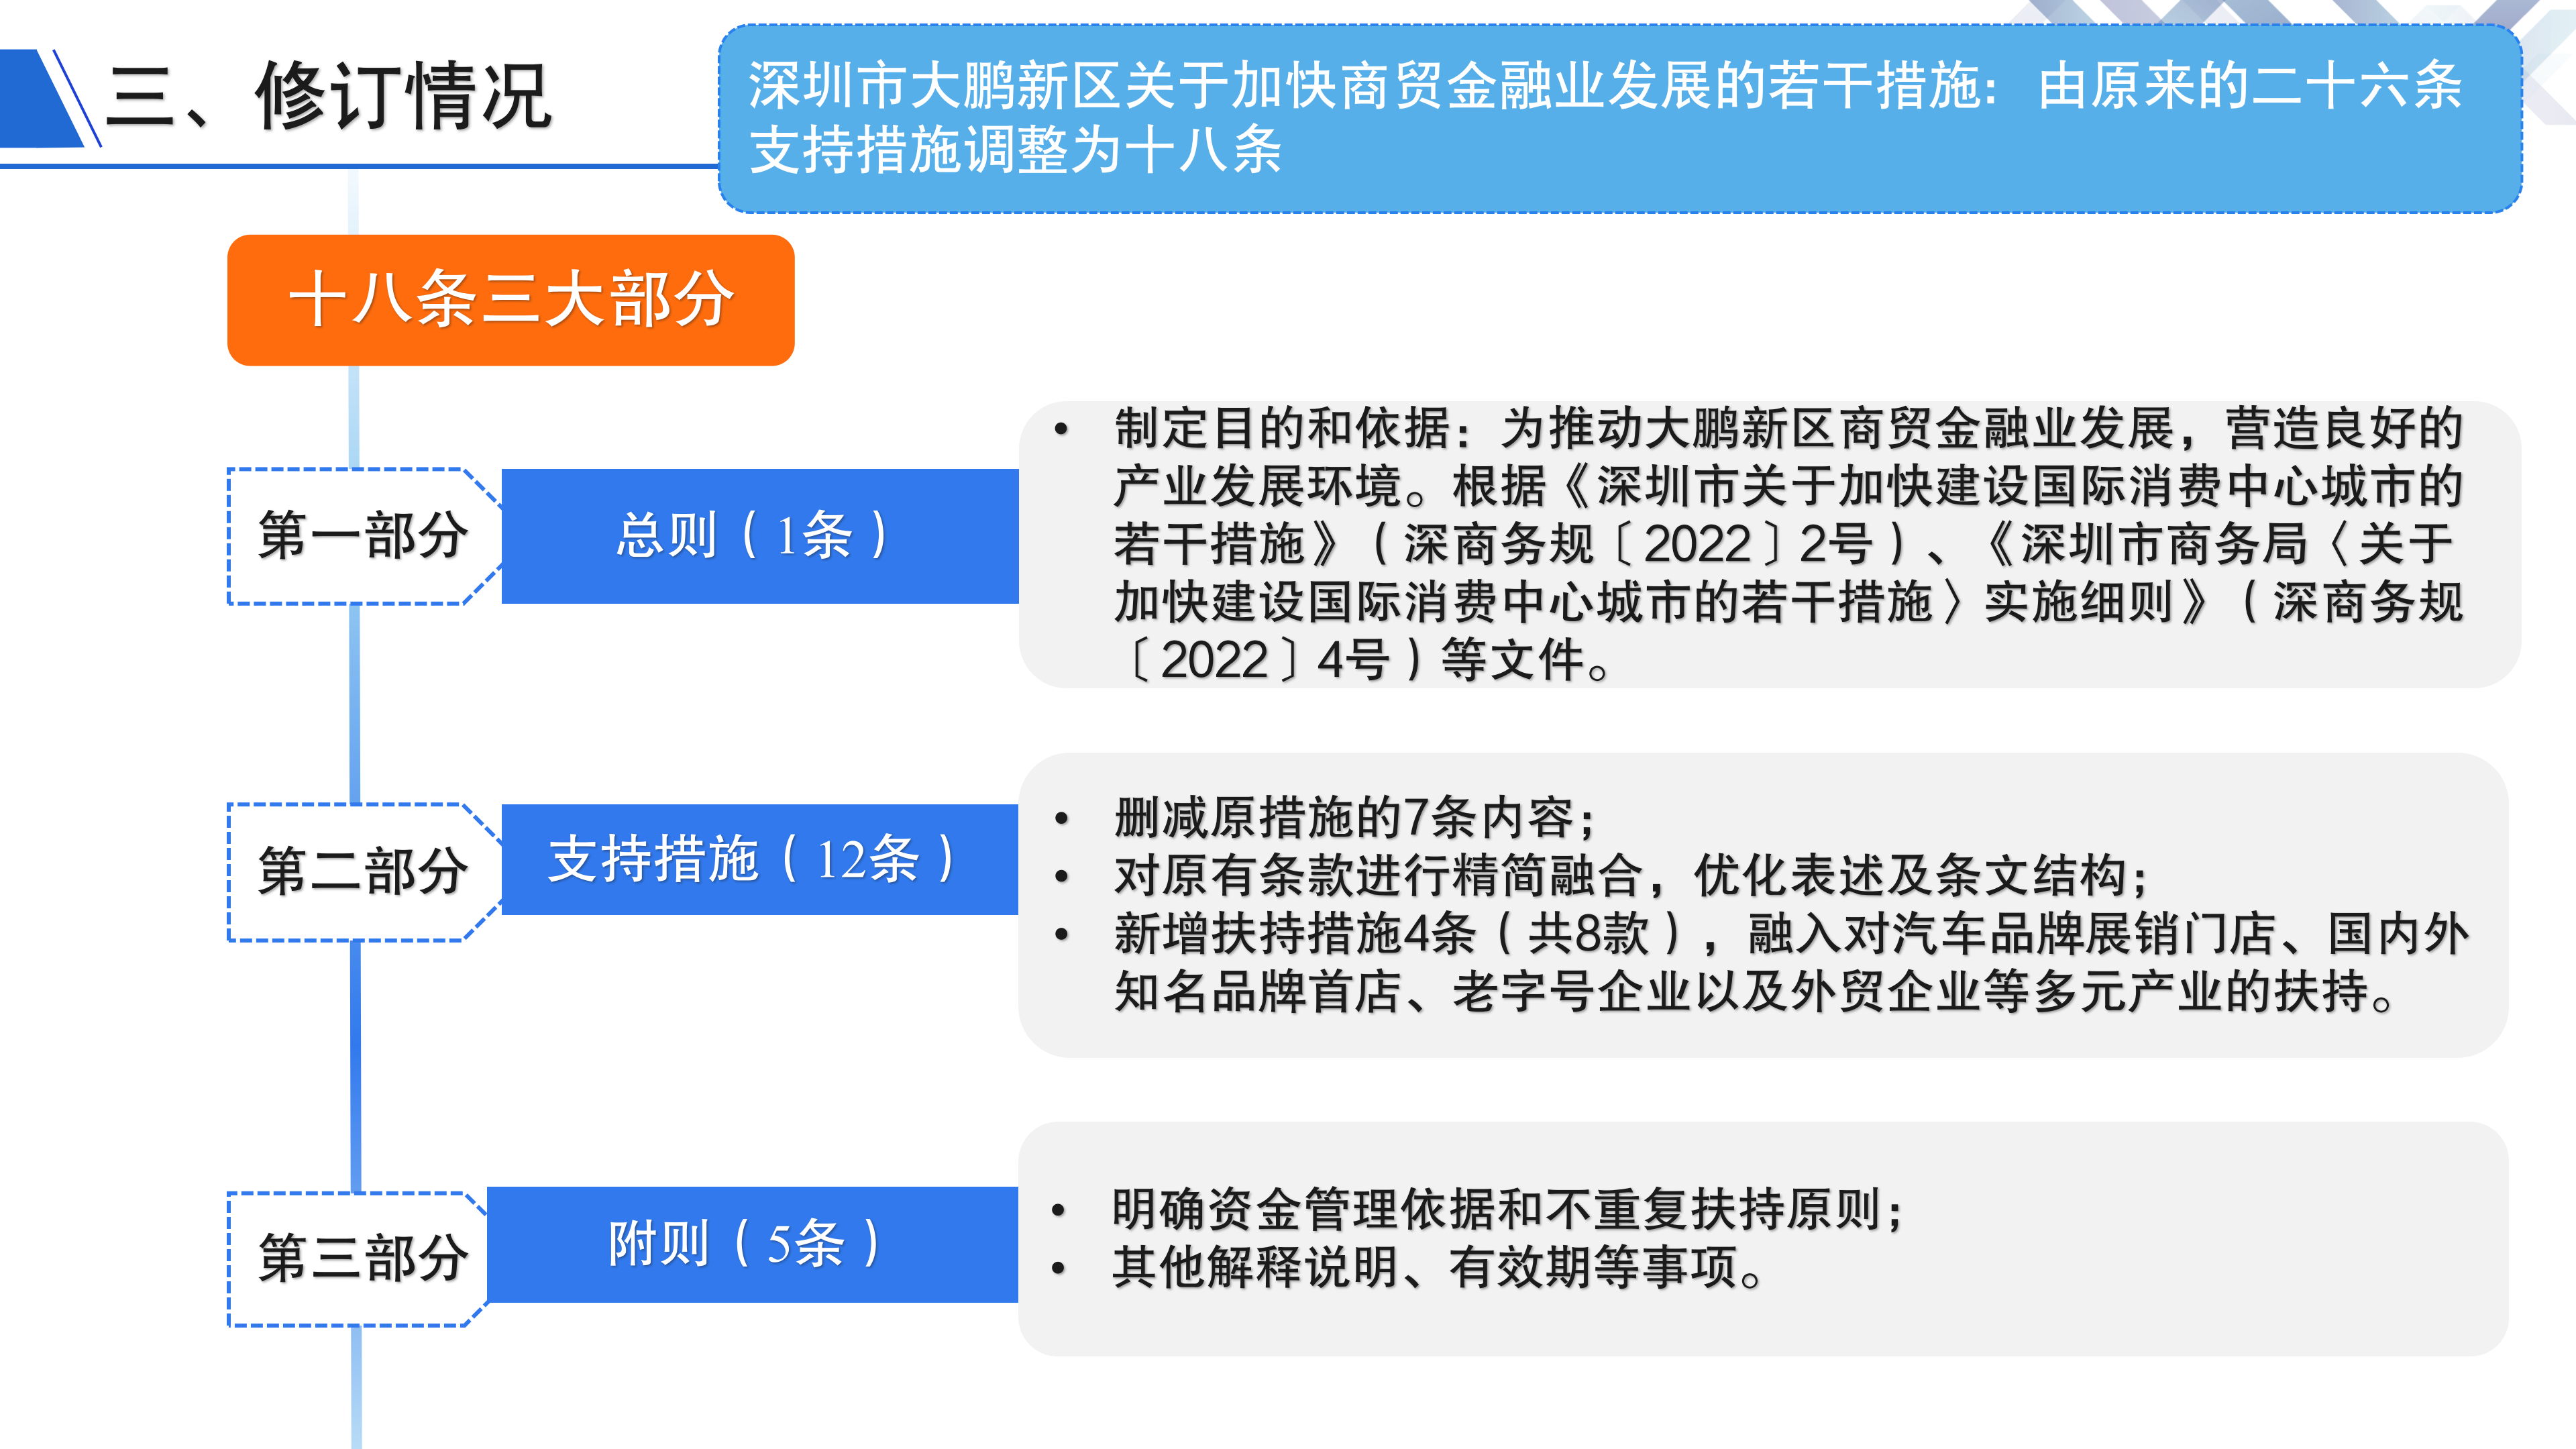 深圳市大鹏新区关于加快商贸金融业发展的若干措施》政策解读_05.png